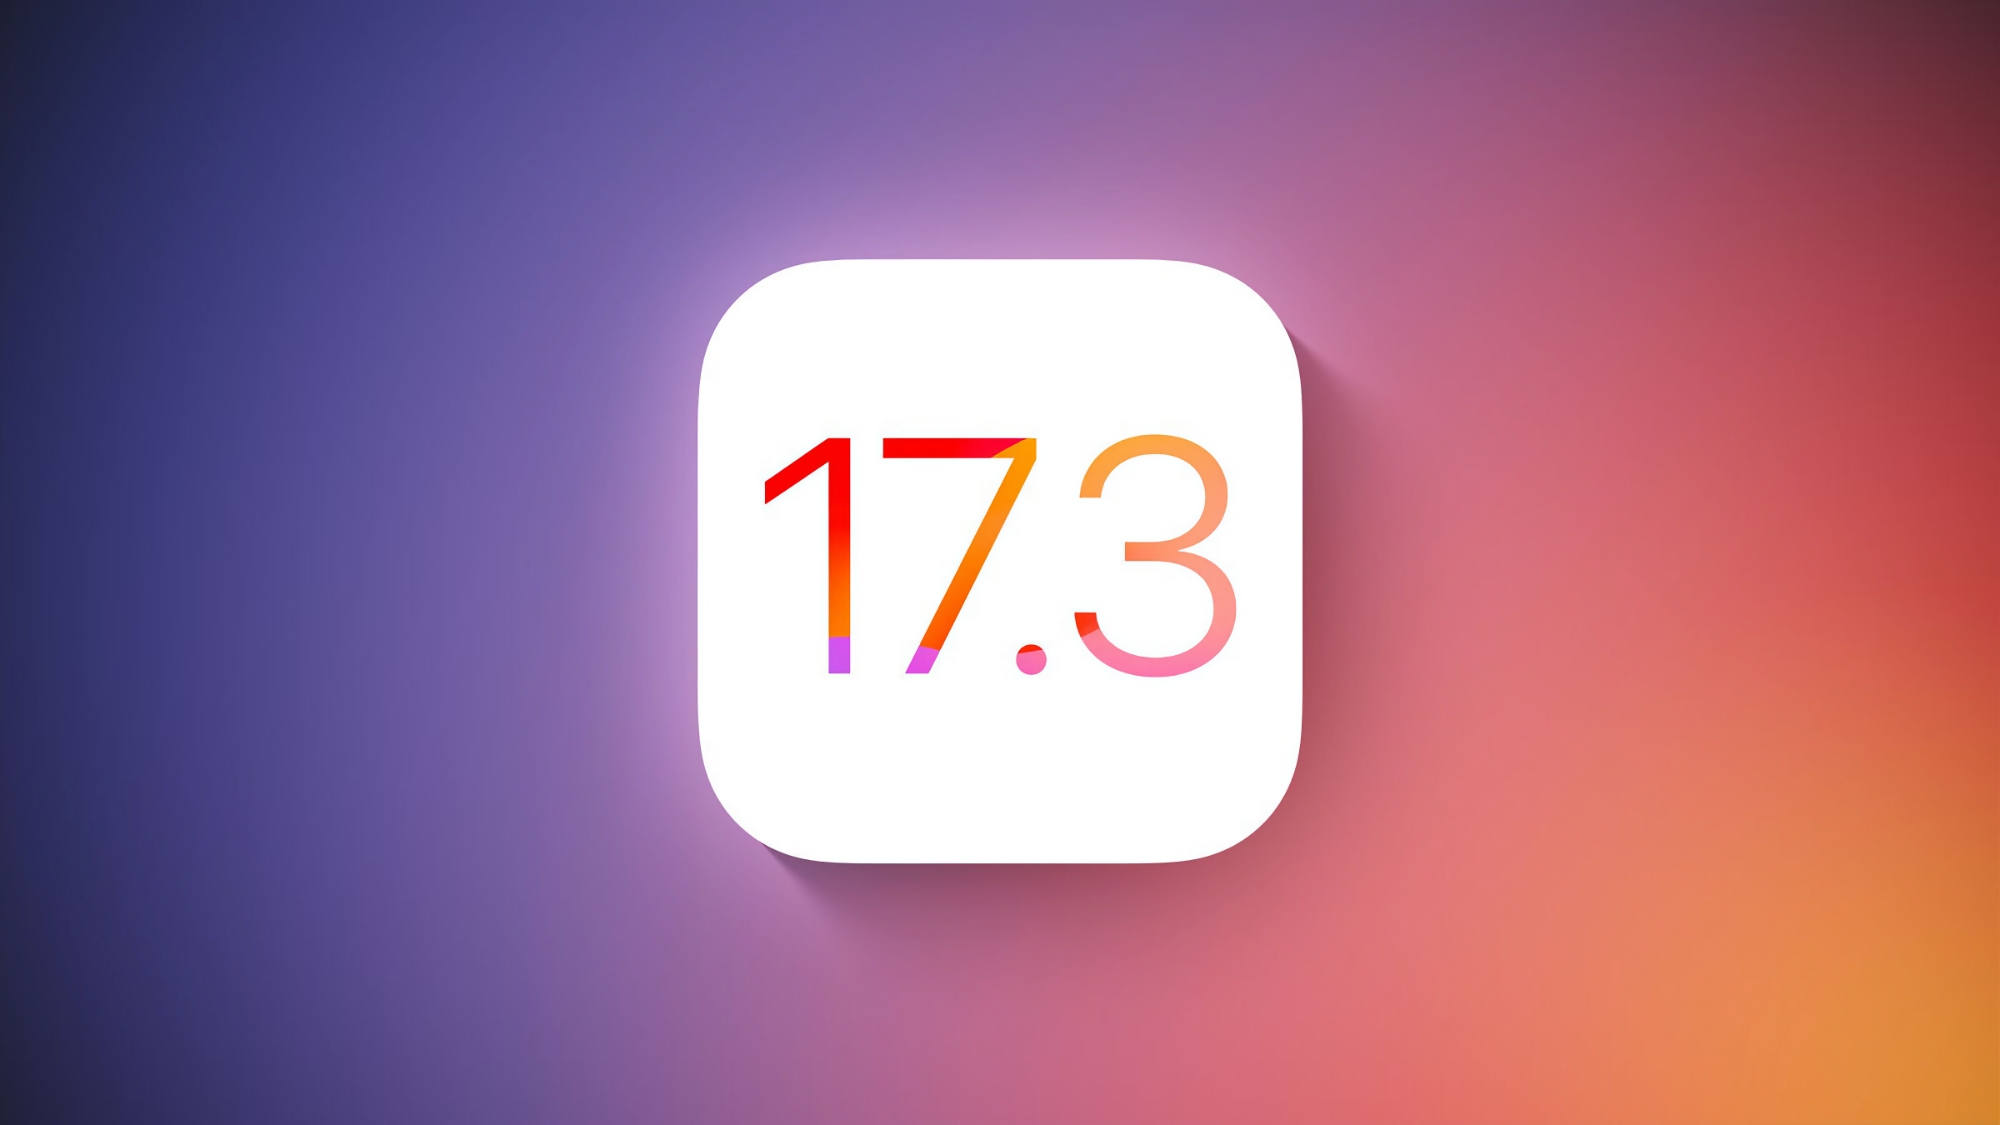 När kommer den stabila versionen av iOS 17.3 att släppas